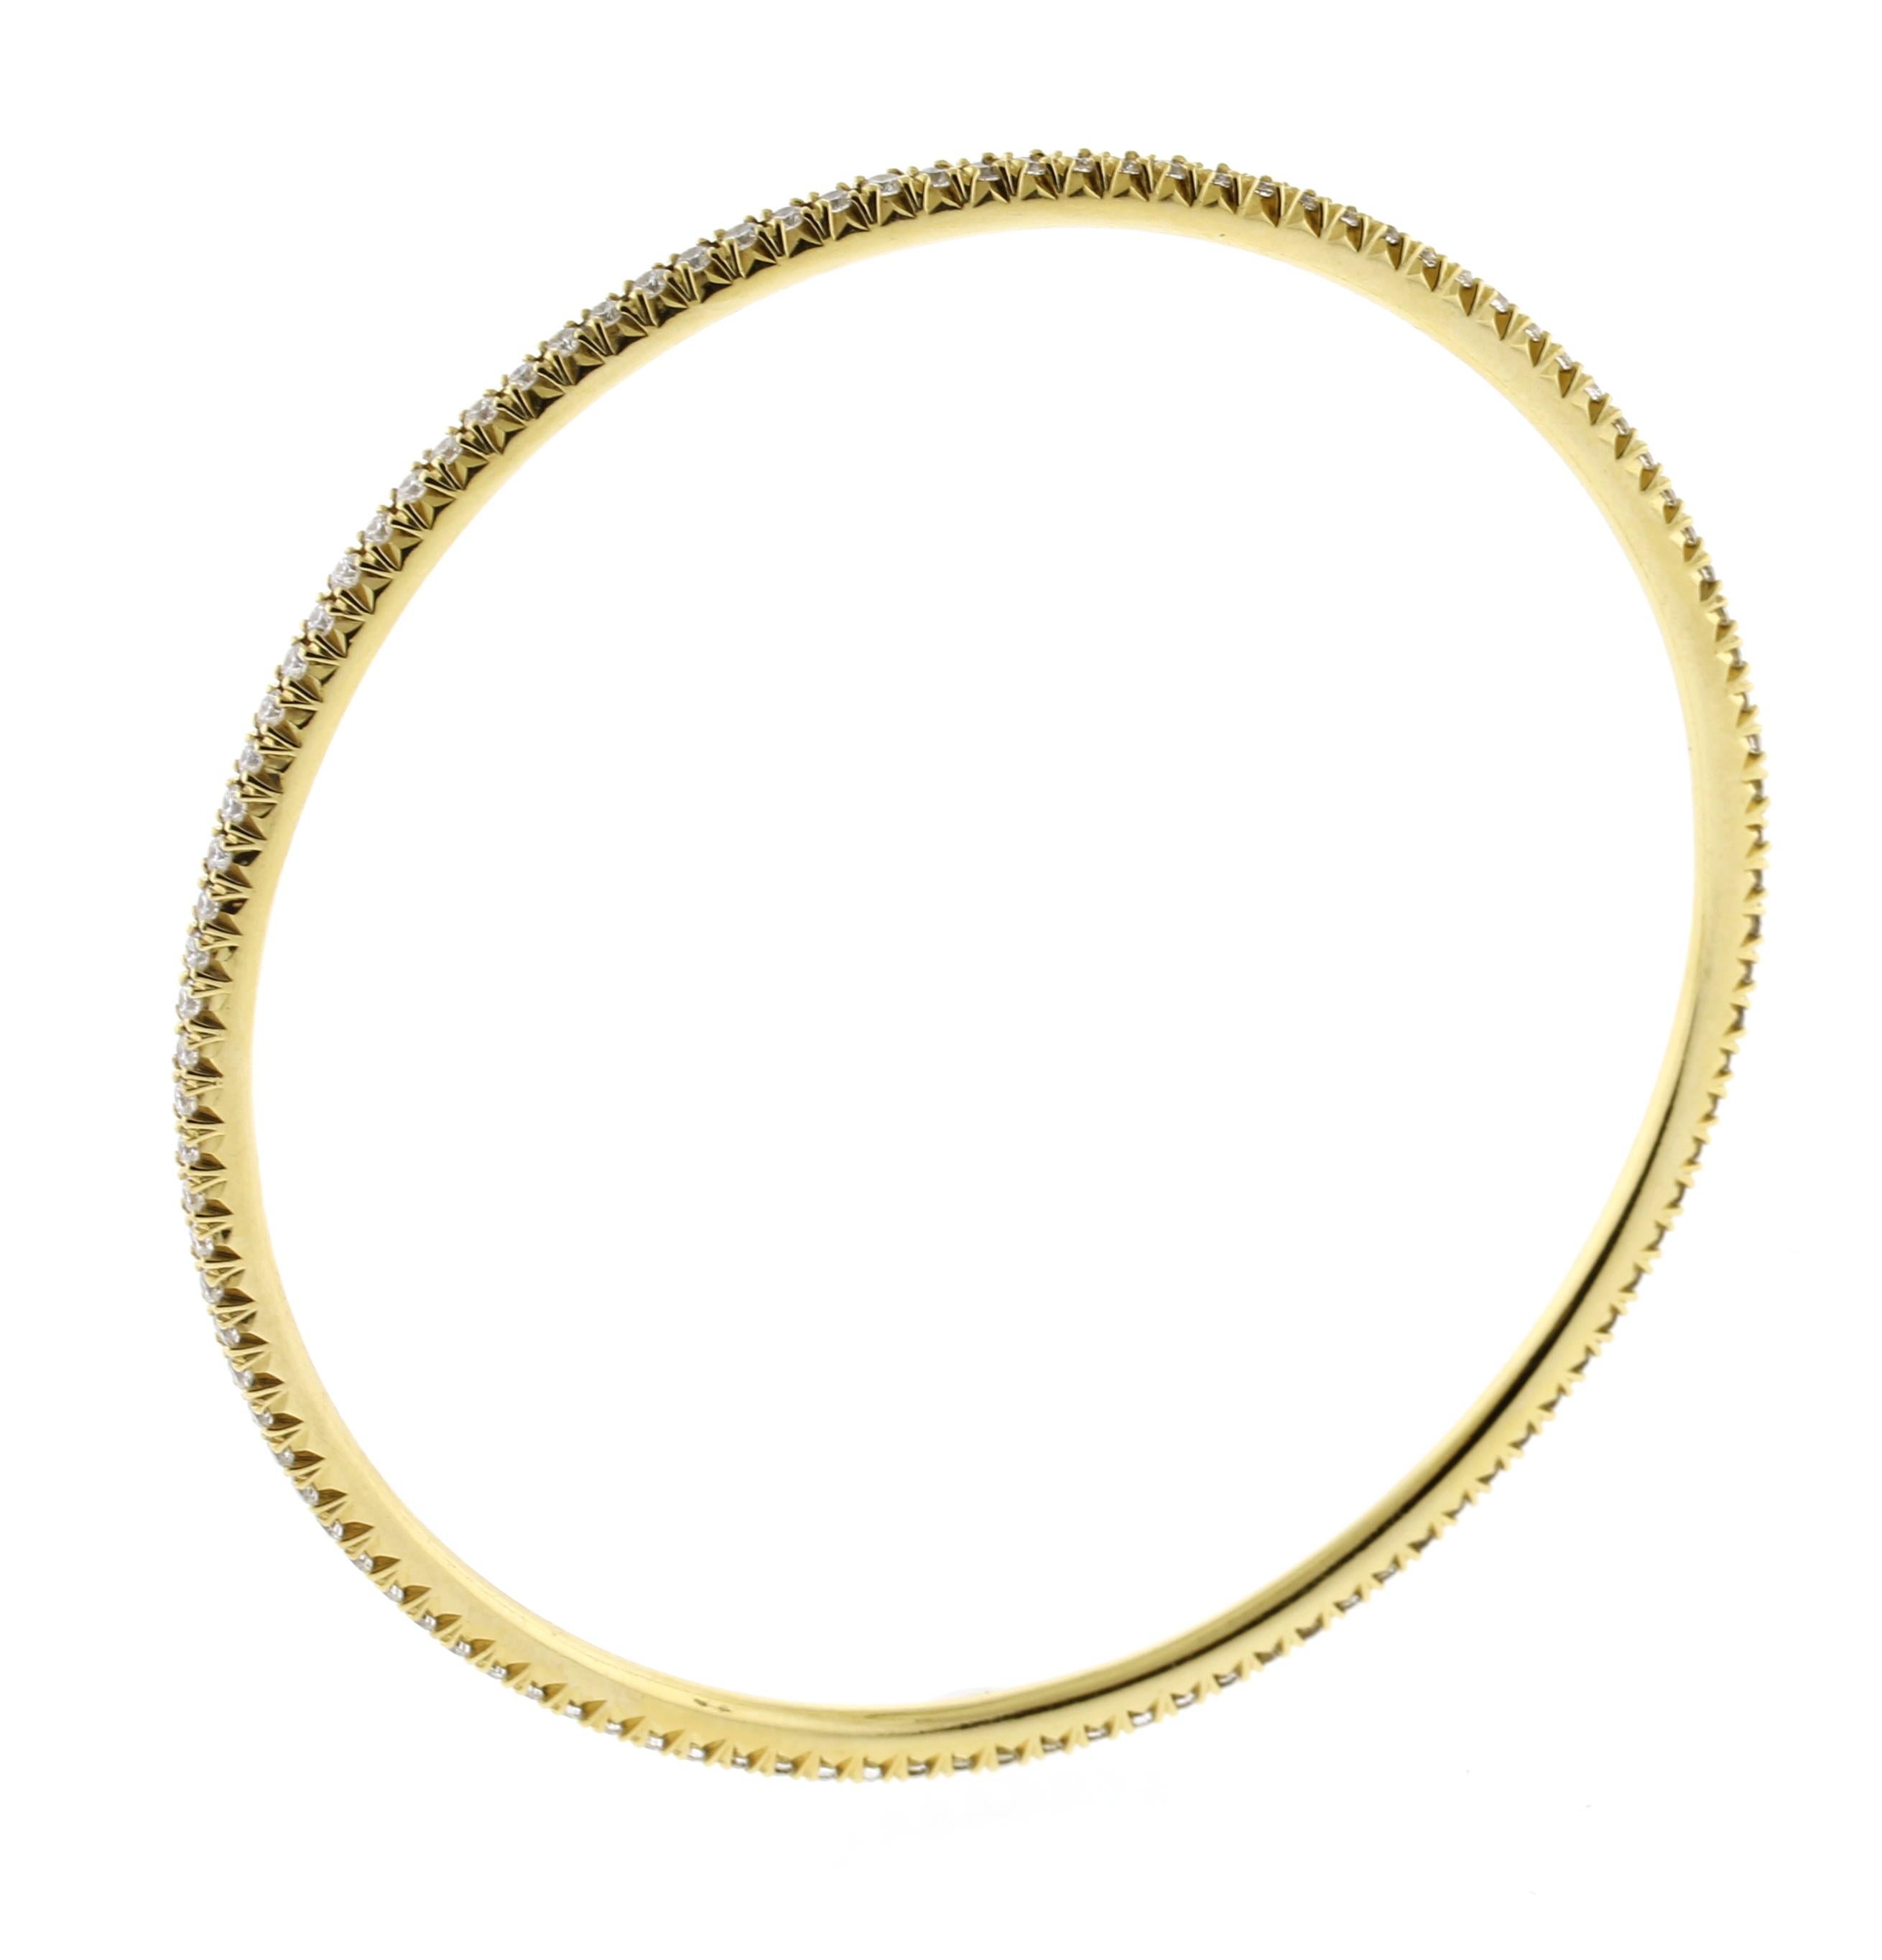 De Tiffany & Co, ce bracelet bangle en or 18 carats avec diamants est issu de la collection Metro.
• Métal : Or jaune 18kt
• Circa : 2020s
• Pierre précieuse : 104 diamants=.65 carats
• Dimensions : 2 3/8 de circonférence
• Emballage : Pochette